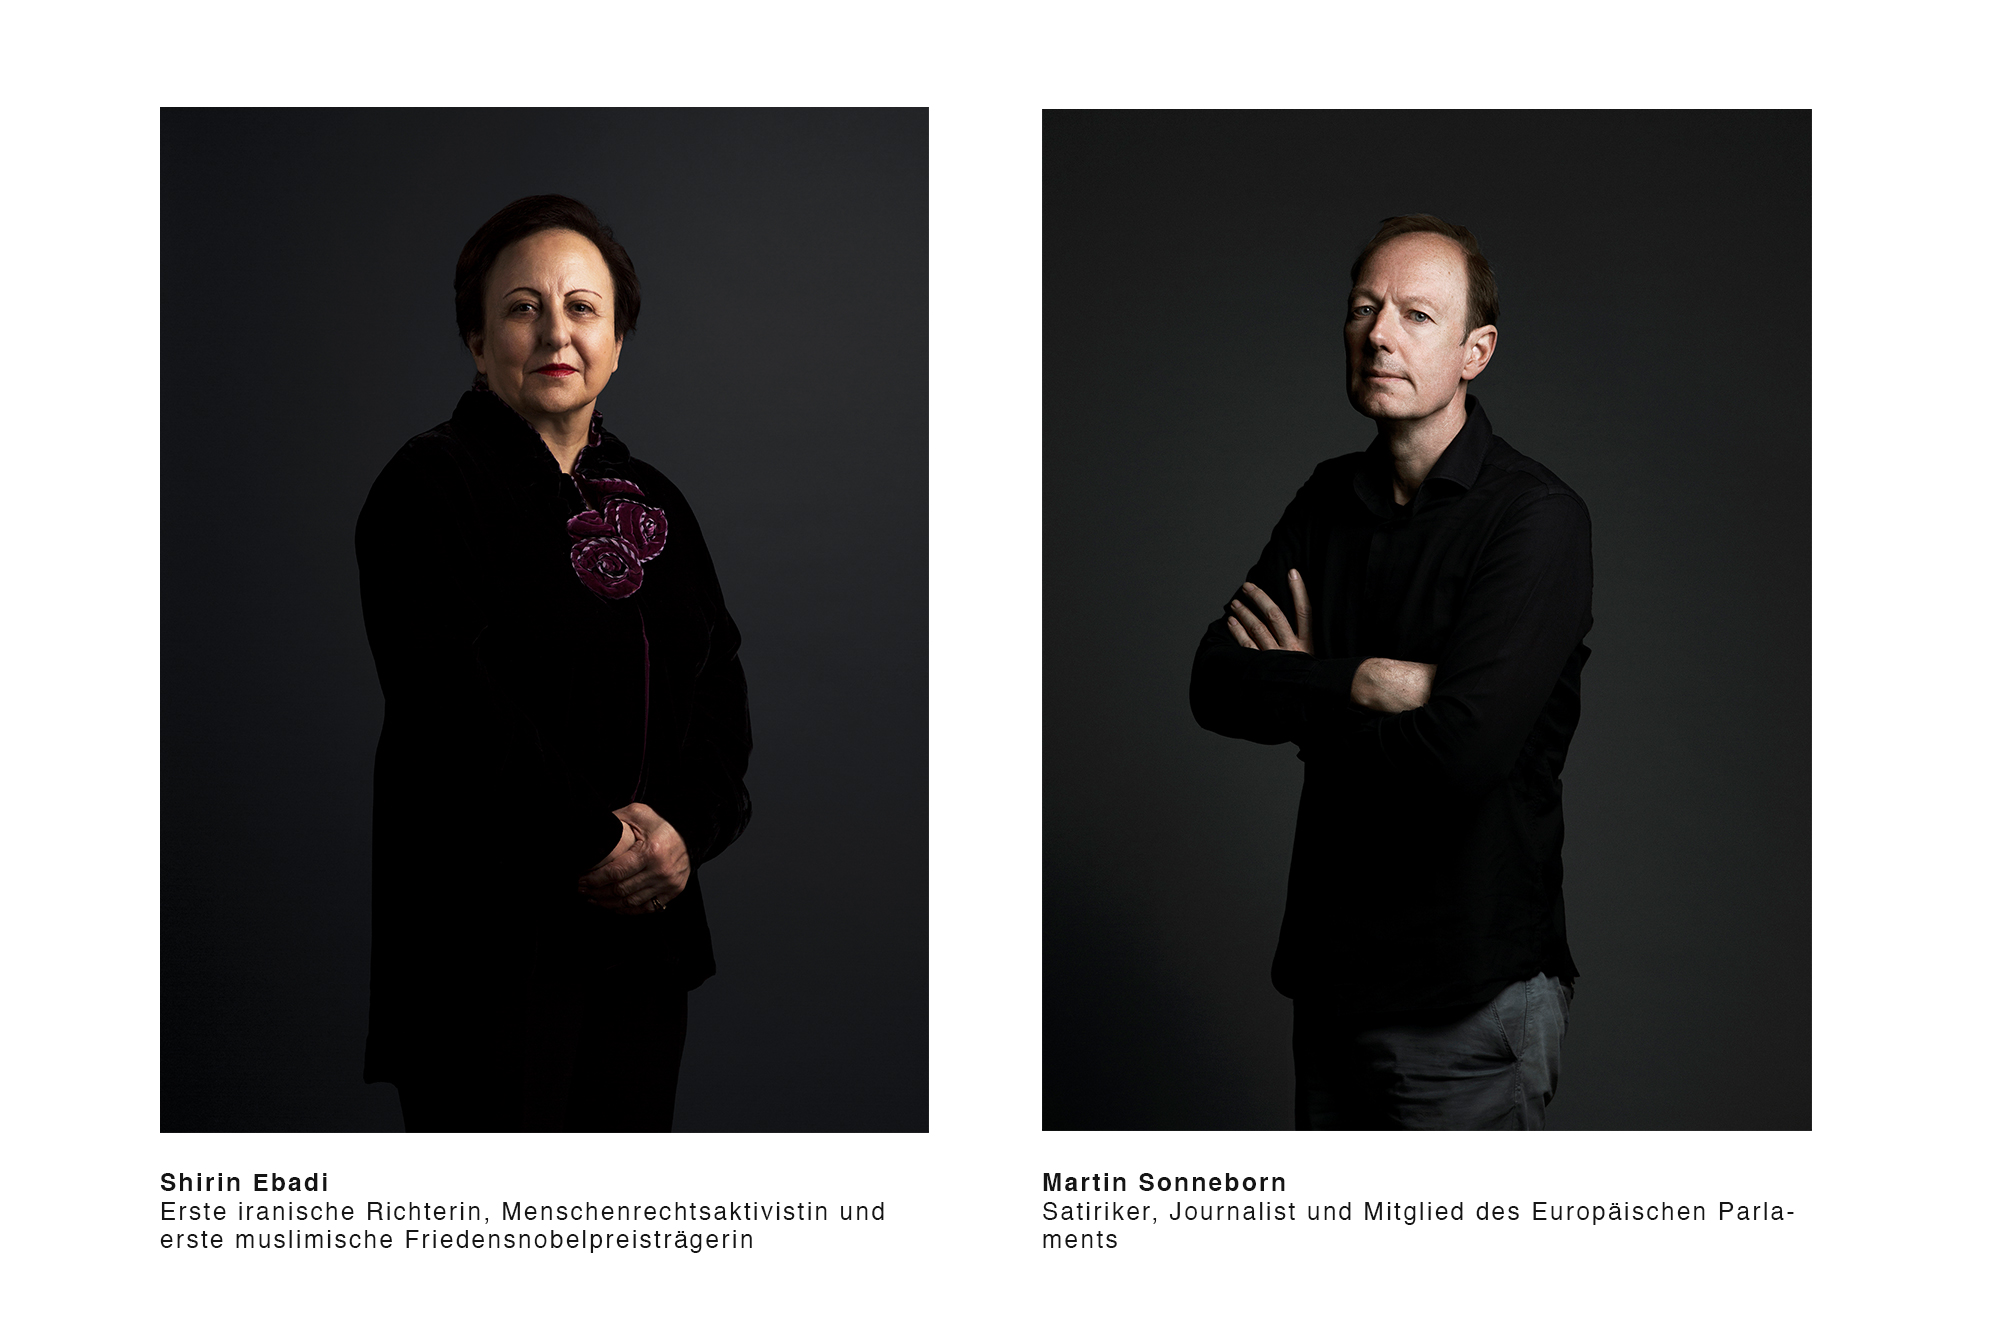 Portrait-Projekt zum Thema Rechtstaatlichkeit von Fotograf Maximilian Baier und Arian Henning